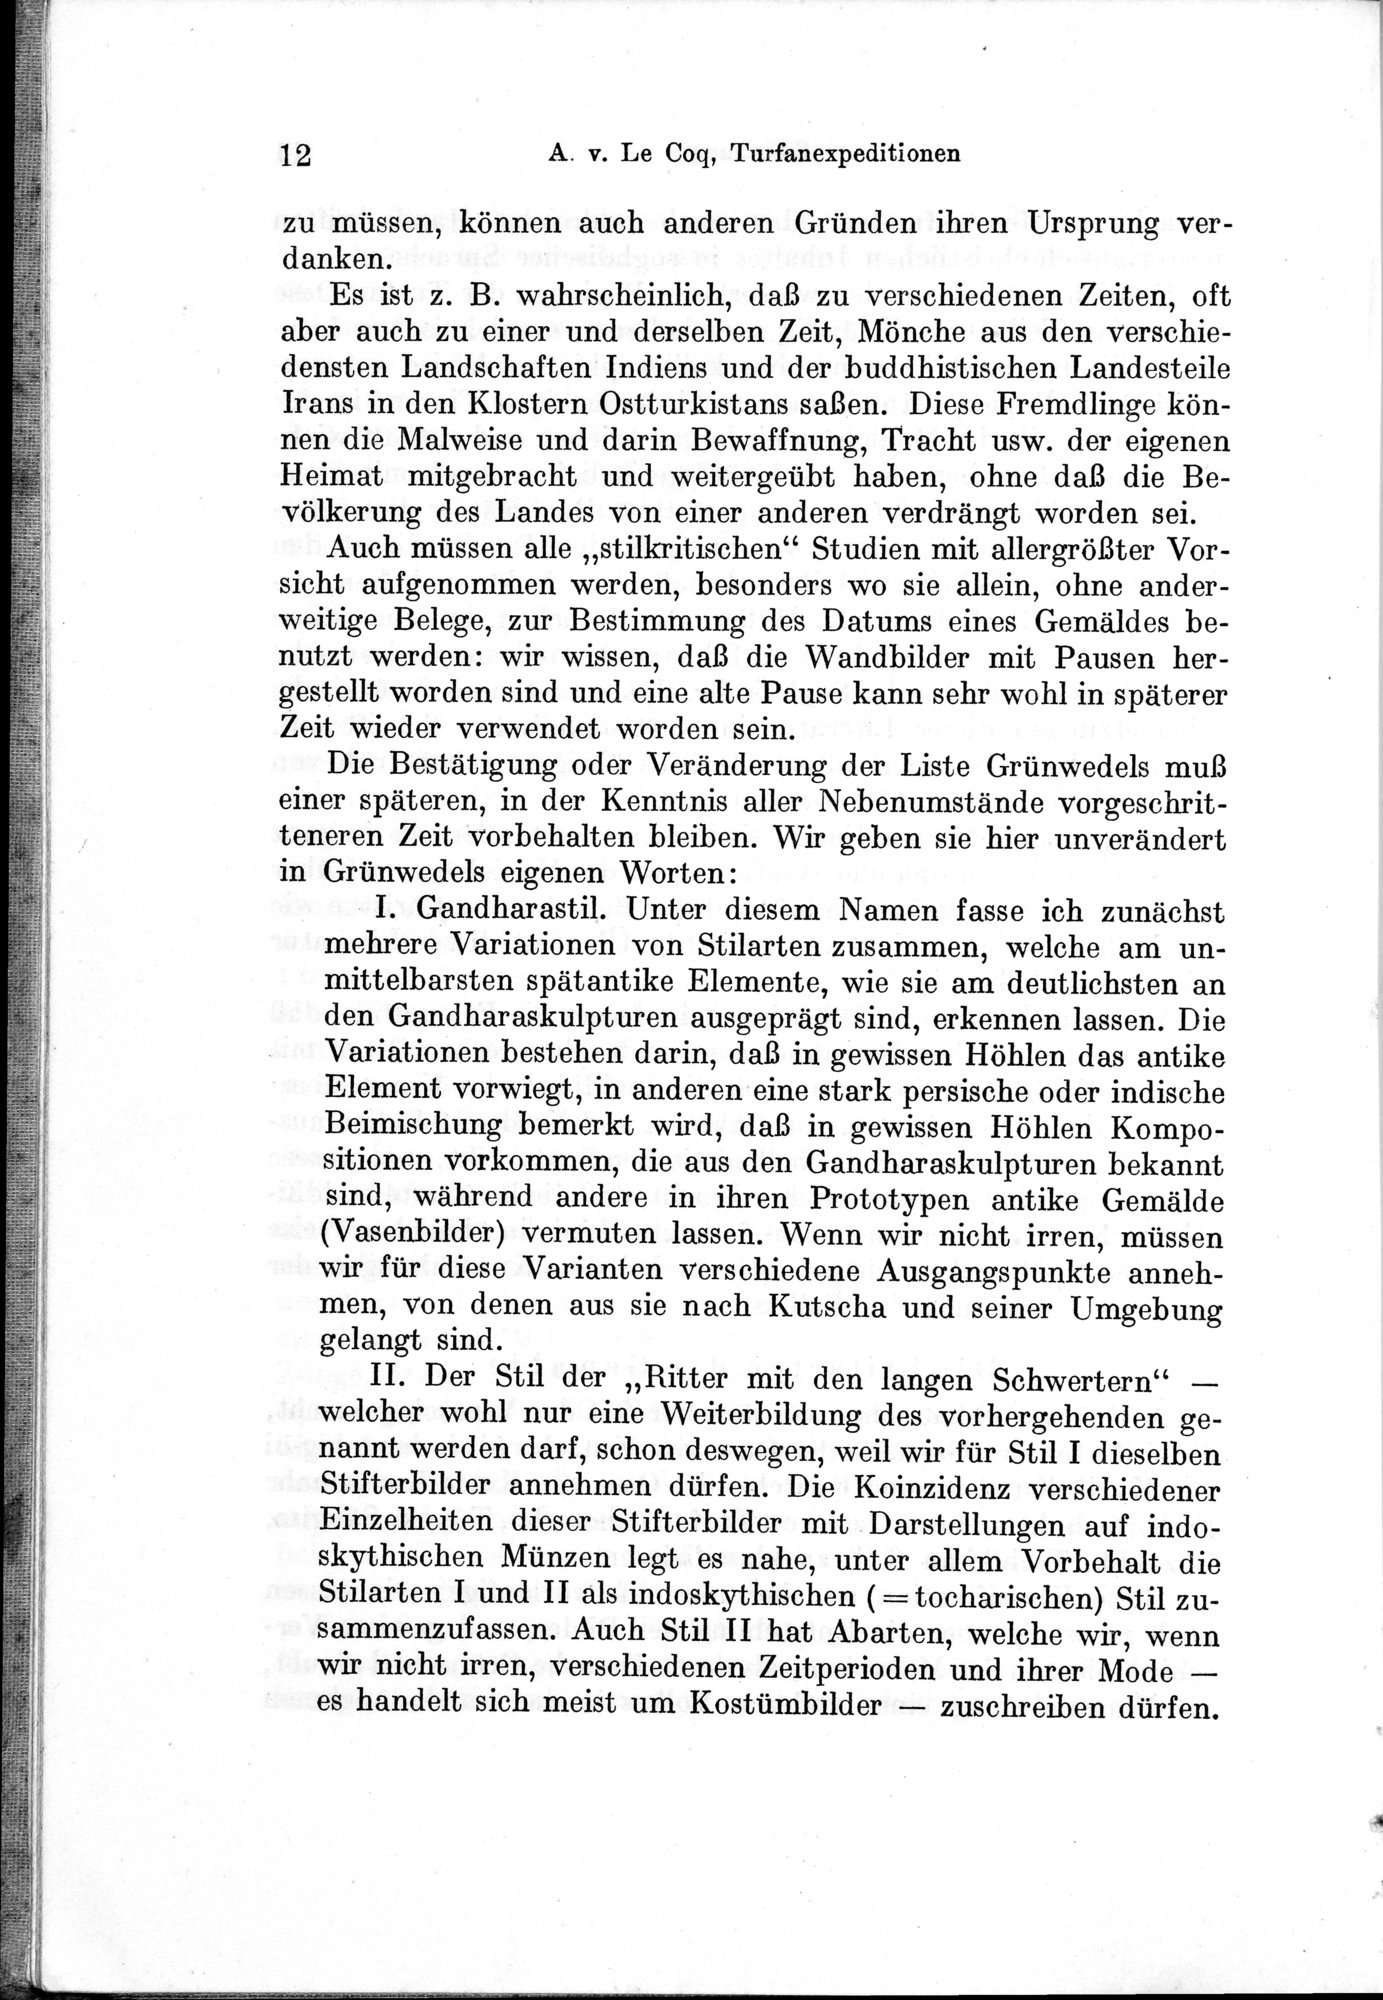 Auf Hellas Spuren in Ostturkistan : vol.1 / Page 28 (Grayscale High Resolution Image)